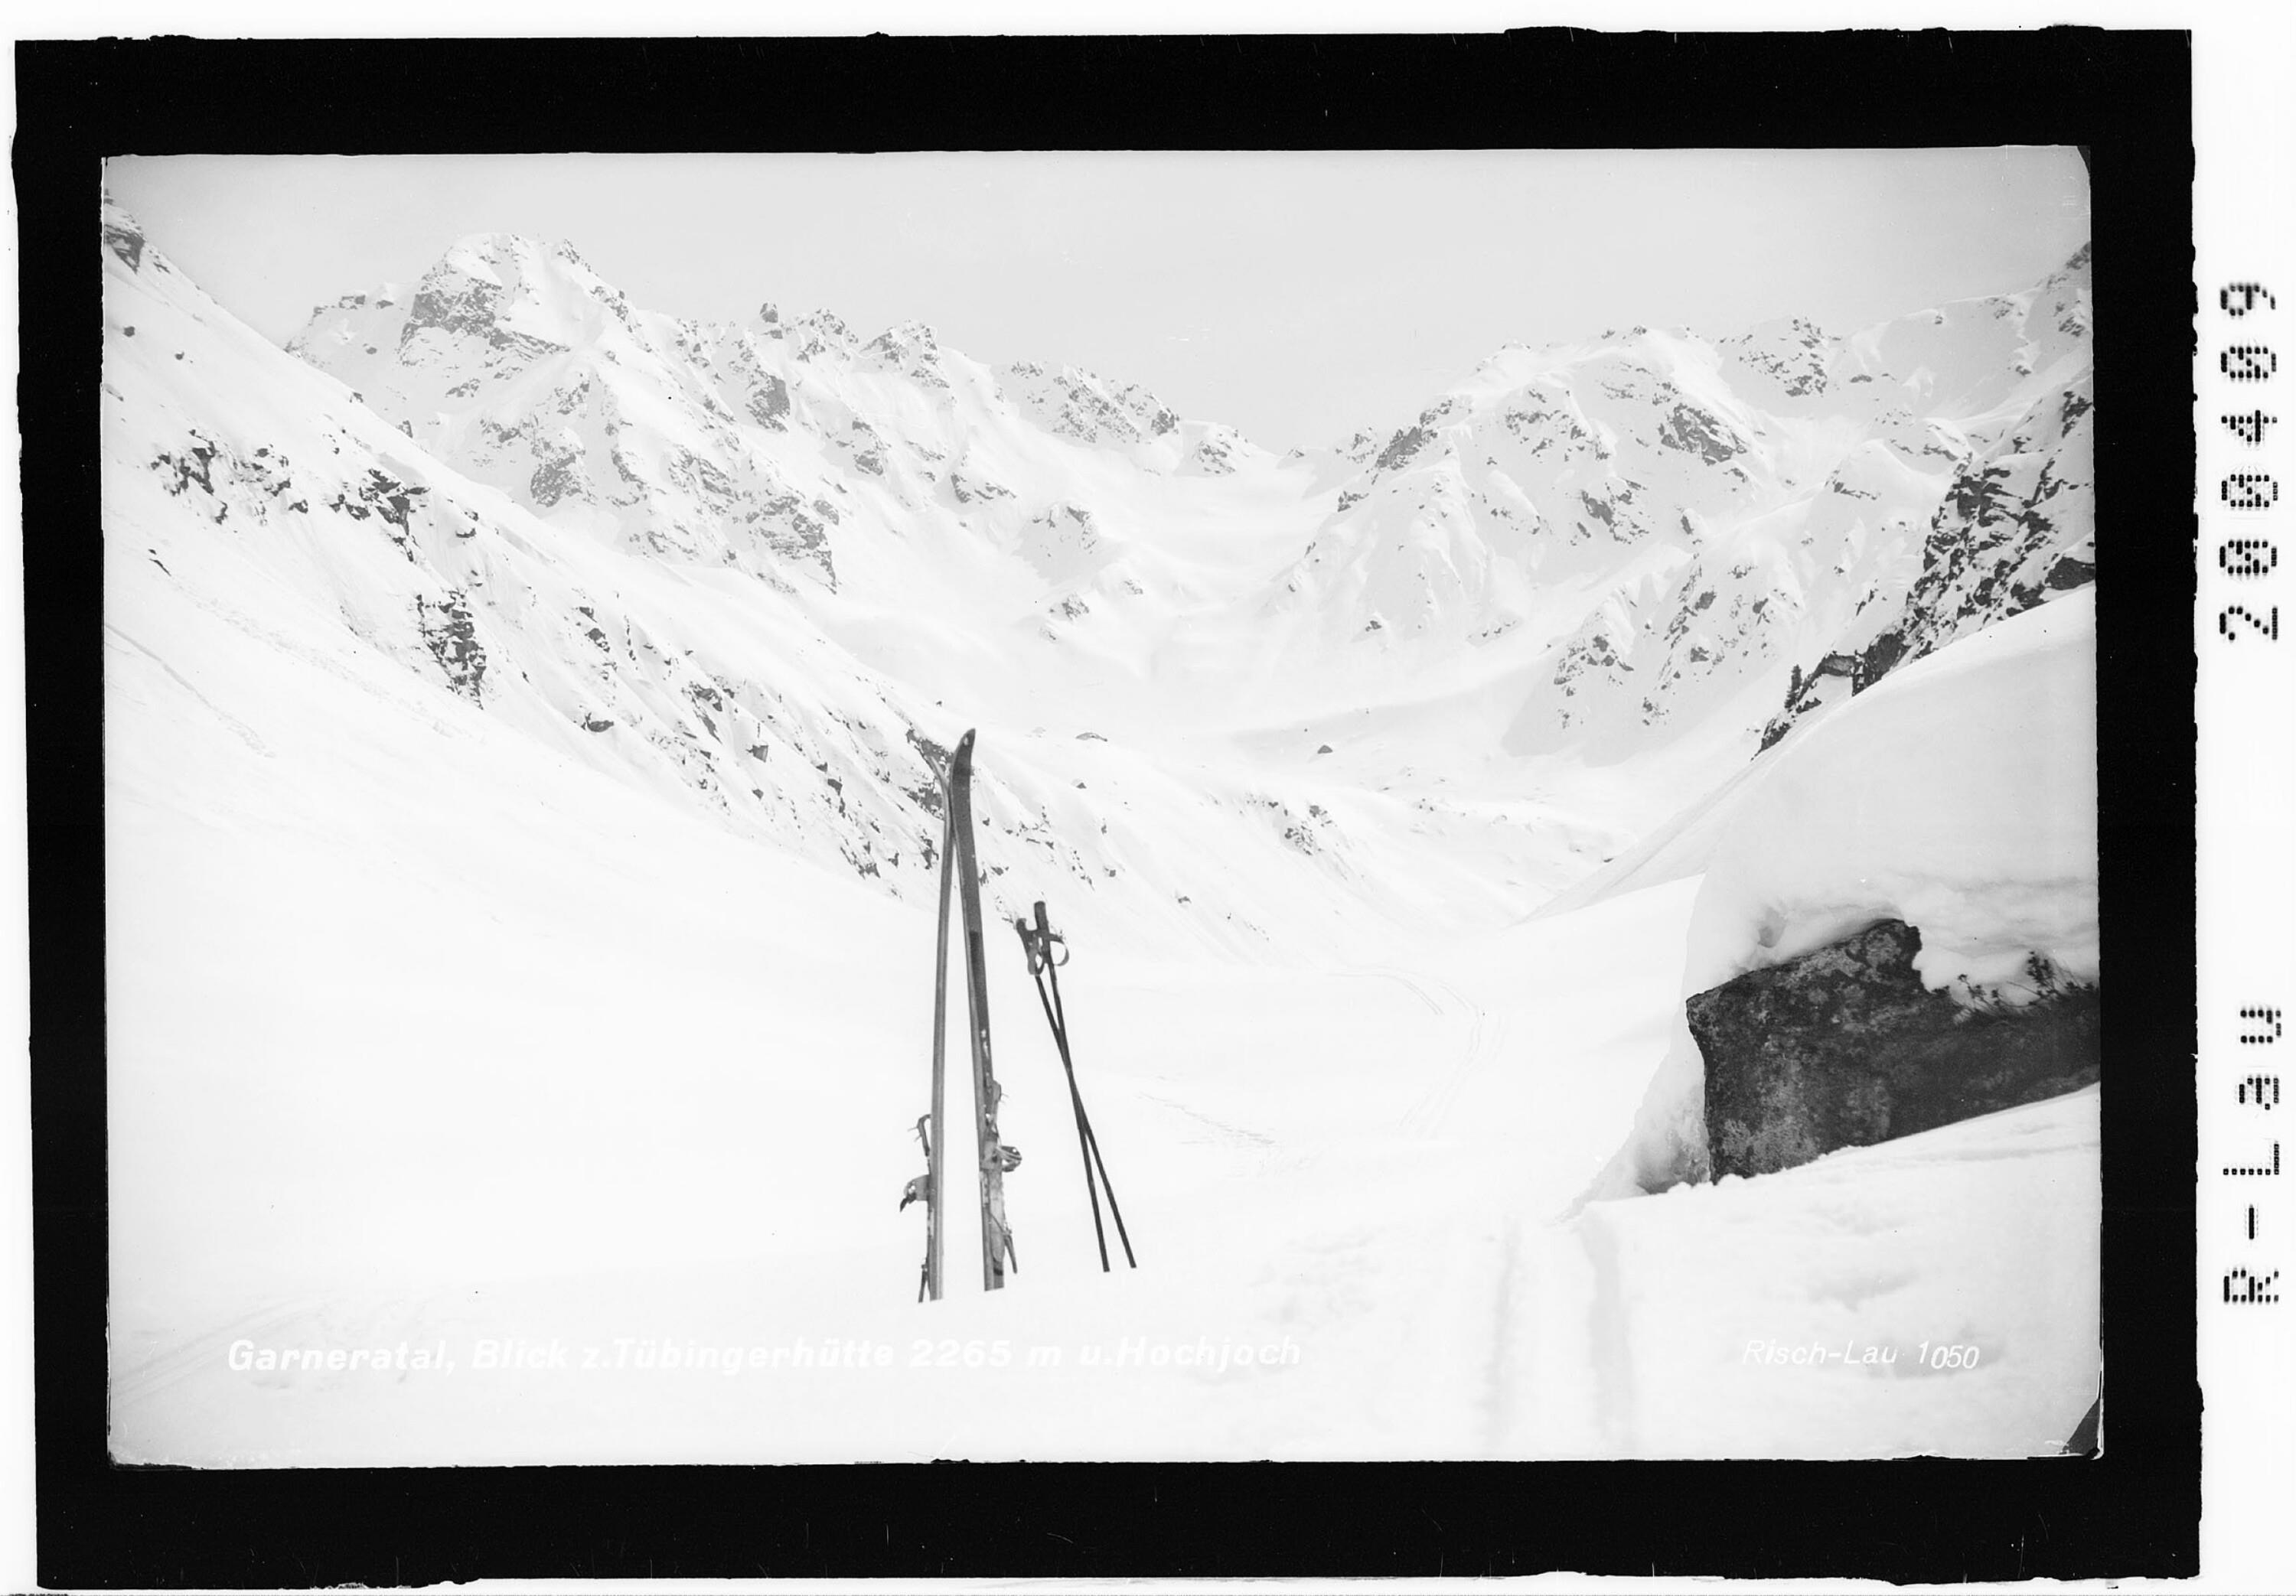 Garneratal, Blick zur Tübingerhütte 2265 m und Hochjoch></div>


    <hr>
    <div class=